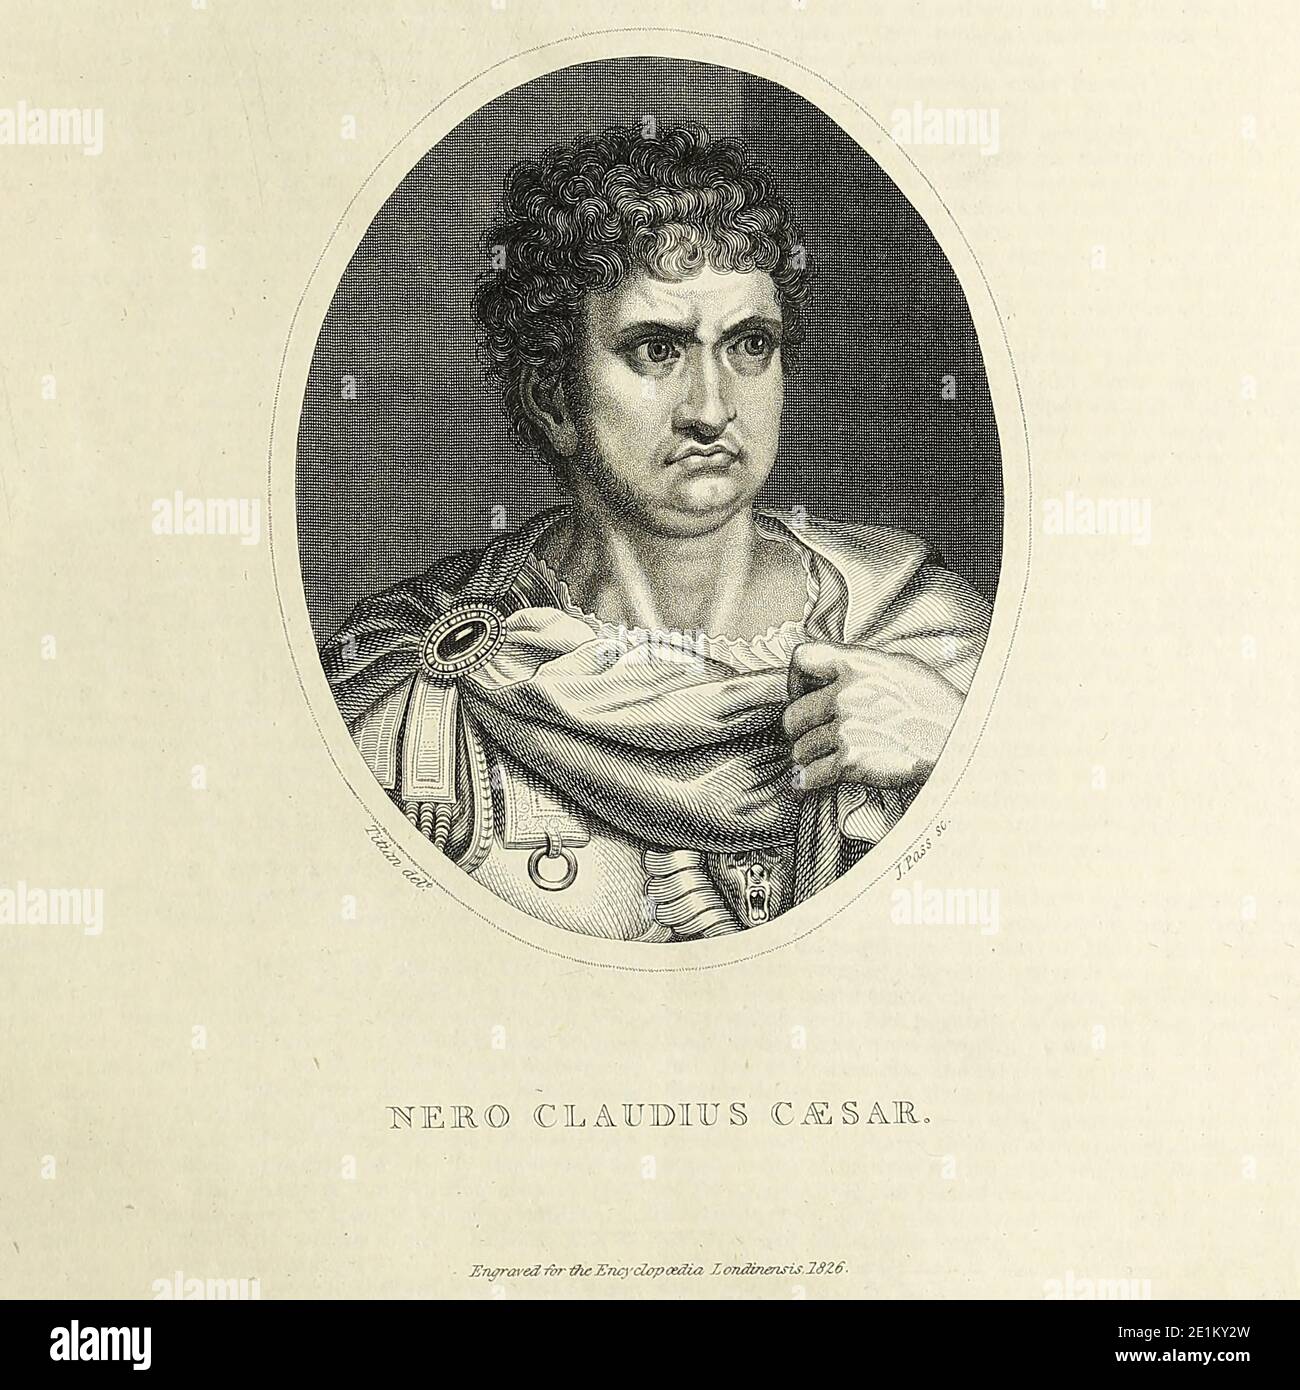 Claudius Caesar Augustus Germanicus; 15. Dezember 37 – 9. Juni 68 n. Chr.) war der fünfte römische Kaiser, der von 54 bis 68 regierte. Seine berüchtigte Herrschaft wird normalerweise mit Tyrannei, Extravaganz und Ausschweifung verbunden. Nero, ursprünglich Lucius Domitius Ahenobarbus genannt, gehörte zur Julio-Claudianischen Dynastie und wurde vom Kaiser Claudius, seinem Großonkel und Stiefvater, als Erbe angenommen. Nero folgte Claudius, während noch nicht 17 Jahre alt, und seine Mutter, Agrippina, versuchte, sein frühes Leben und Entscheidungen zu dominieren, aber Nero warf sie weg und ließ sie fünf Jahre nach seiner Herrschaft töten. Kupferstich aus dem Enc Stockfoto